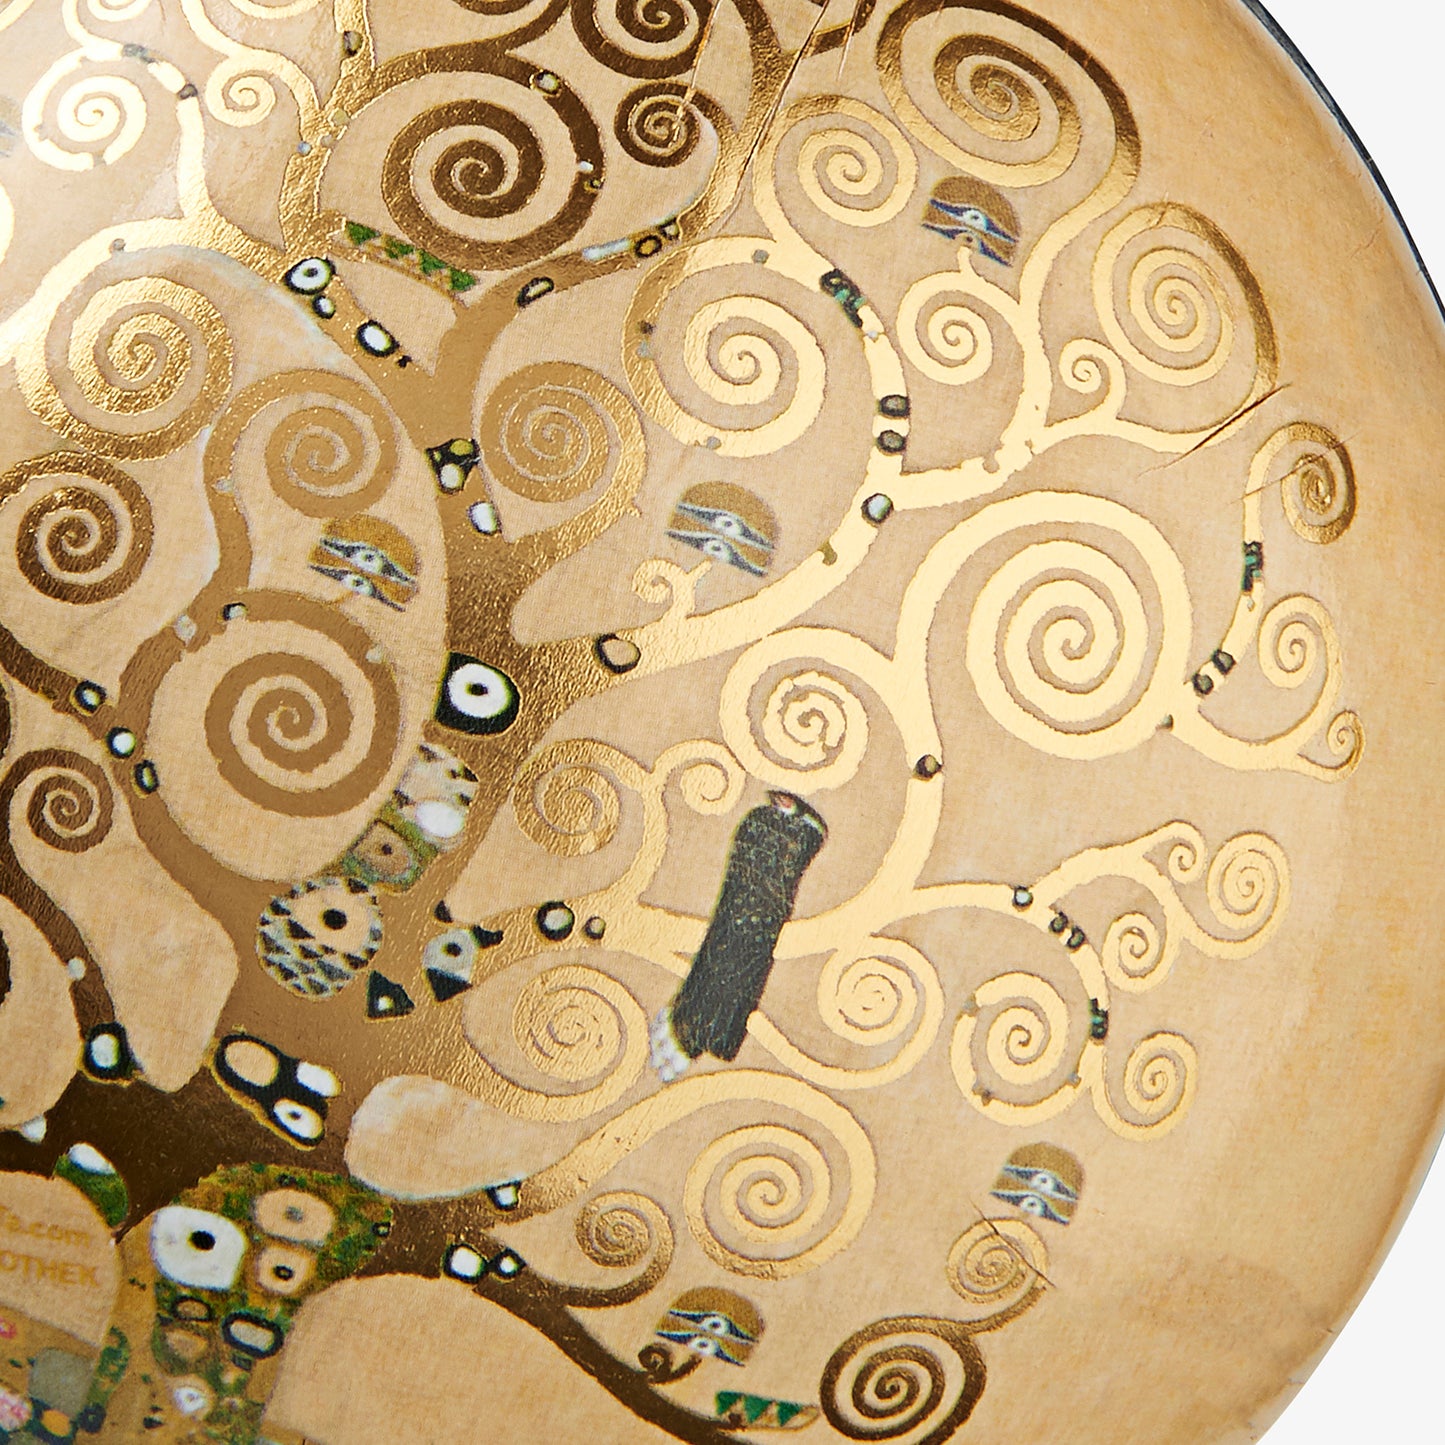 Gift ball - Gustav Klimt, The Tree of Life